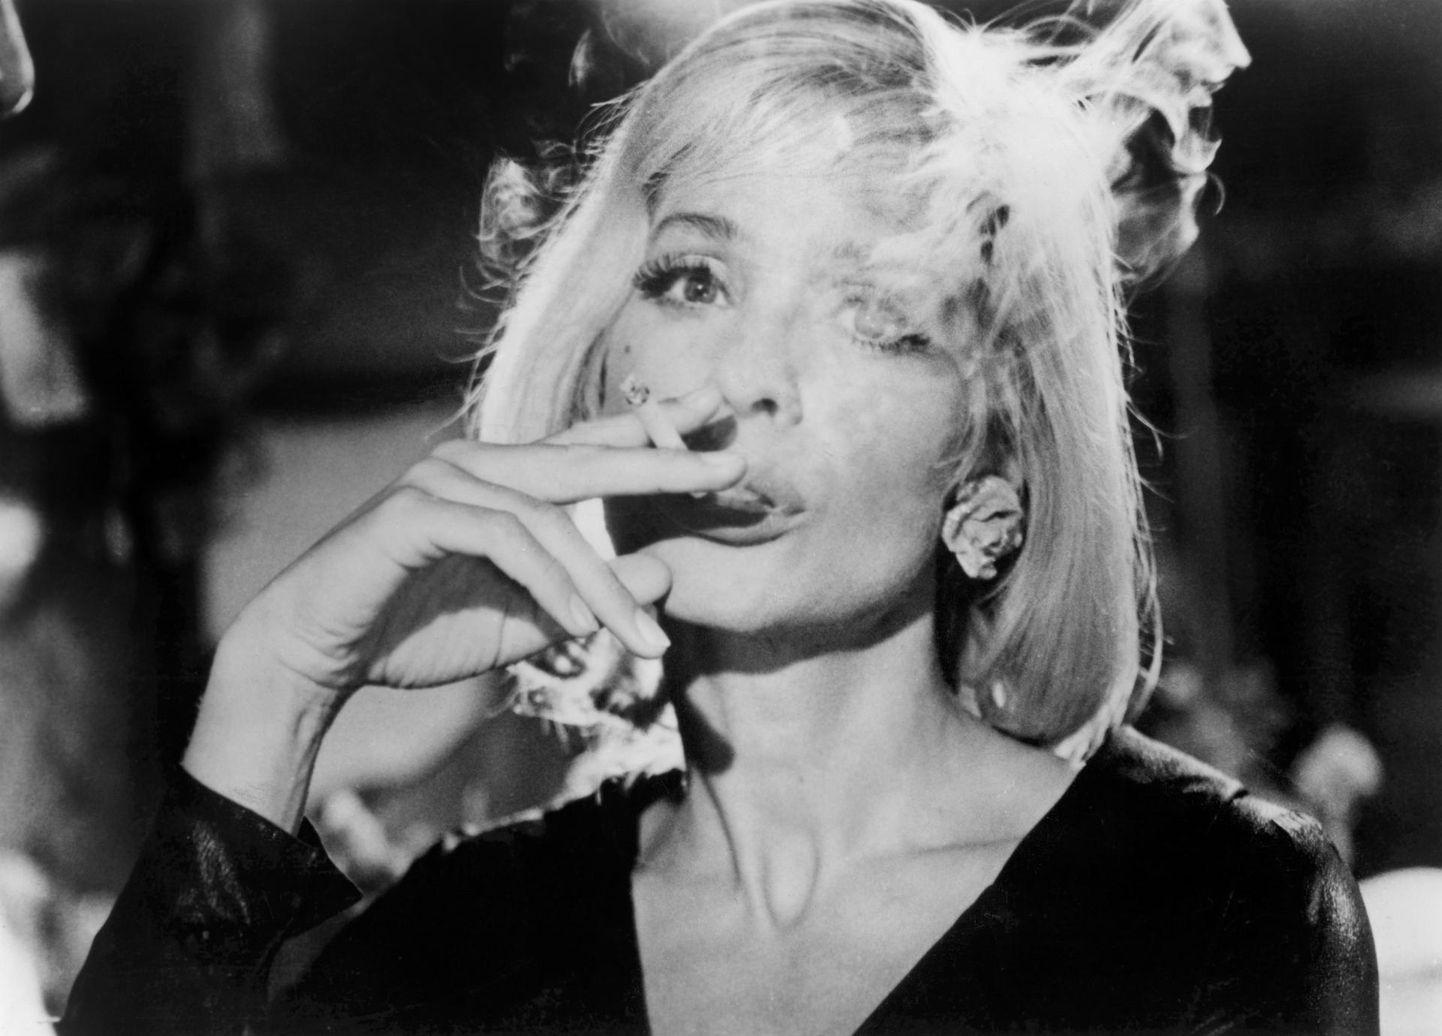 Näitleja Ingrid Thulin filmivõtetel aastal 1964, kui jõudis avalikkuse ette raport suitsetamise seosest kopsuvähiga. Sigaretid aga hakkasid popkultuurist kaduma 2000. aastatel.